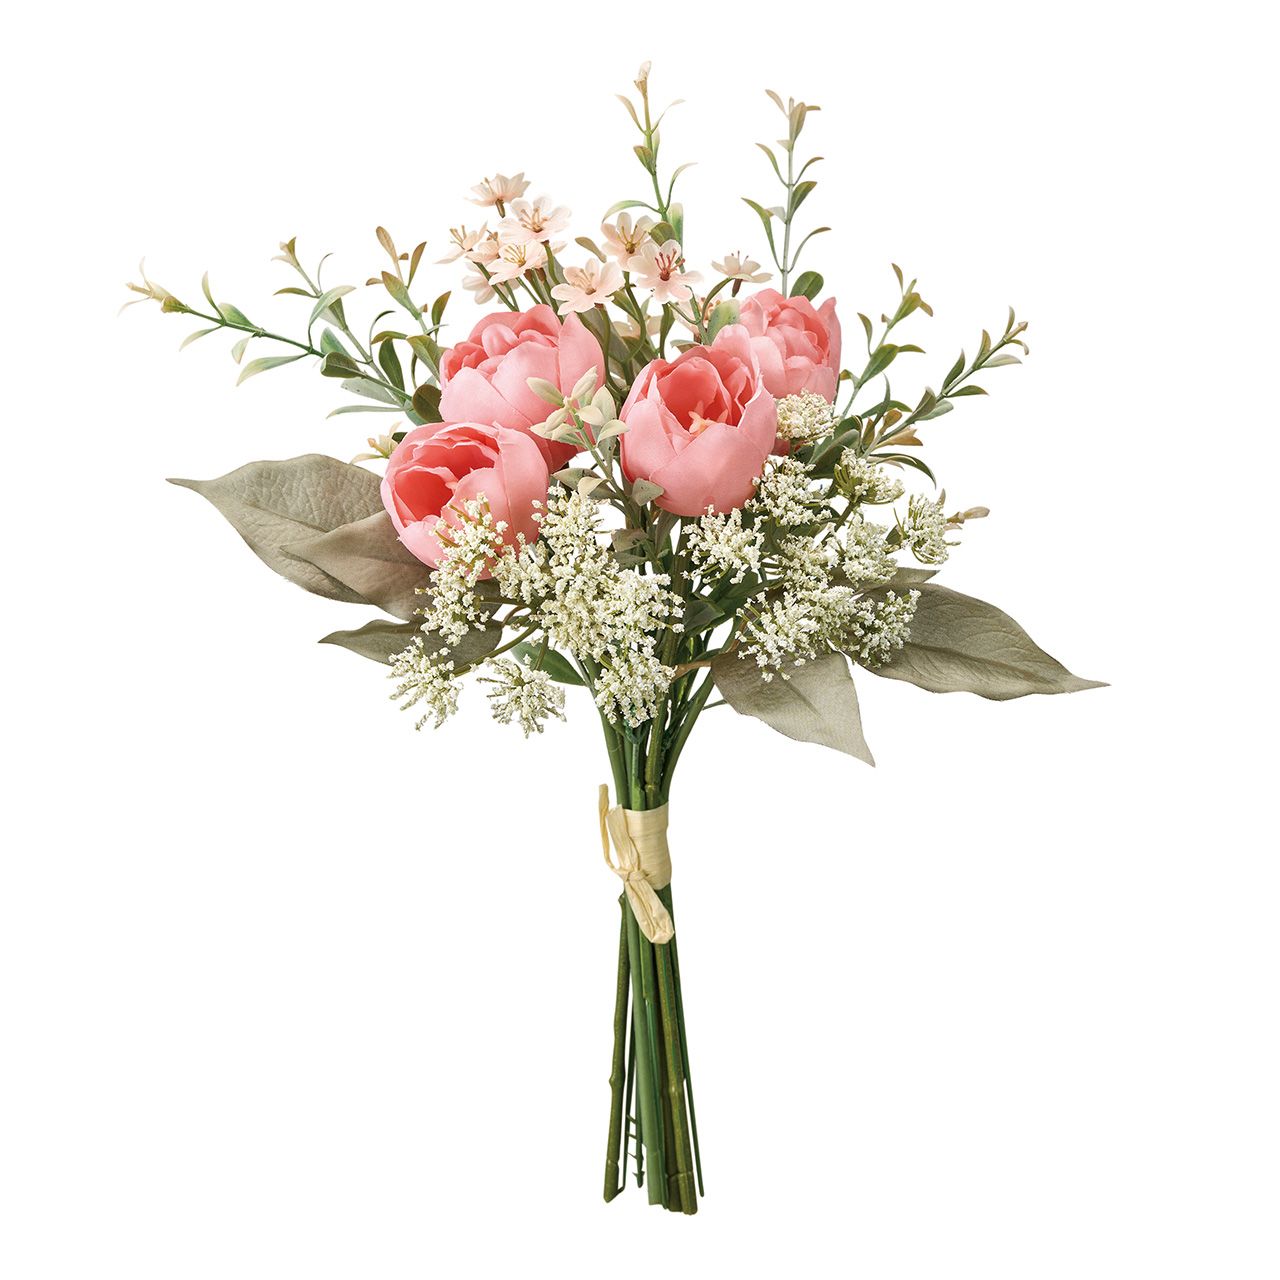 マイフラ】 通販/MAGIQ セシルチューリップブーケ ピンク アーティフィシャルフラワー 造花 チューリップ FM008571-002(ピンク):  MAGIQ(アーティフィシャルフラワー 造花)/全国にMAGIQ、花器、花資材などをお届けします。